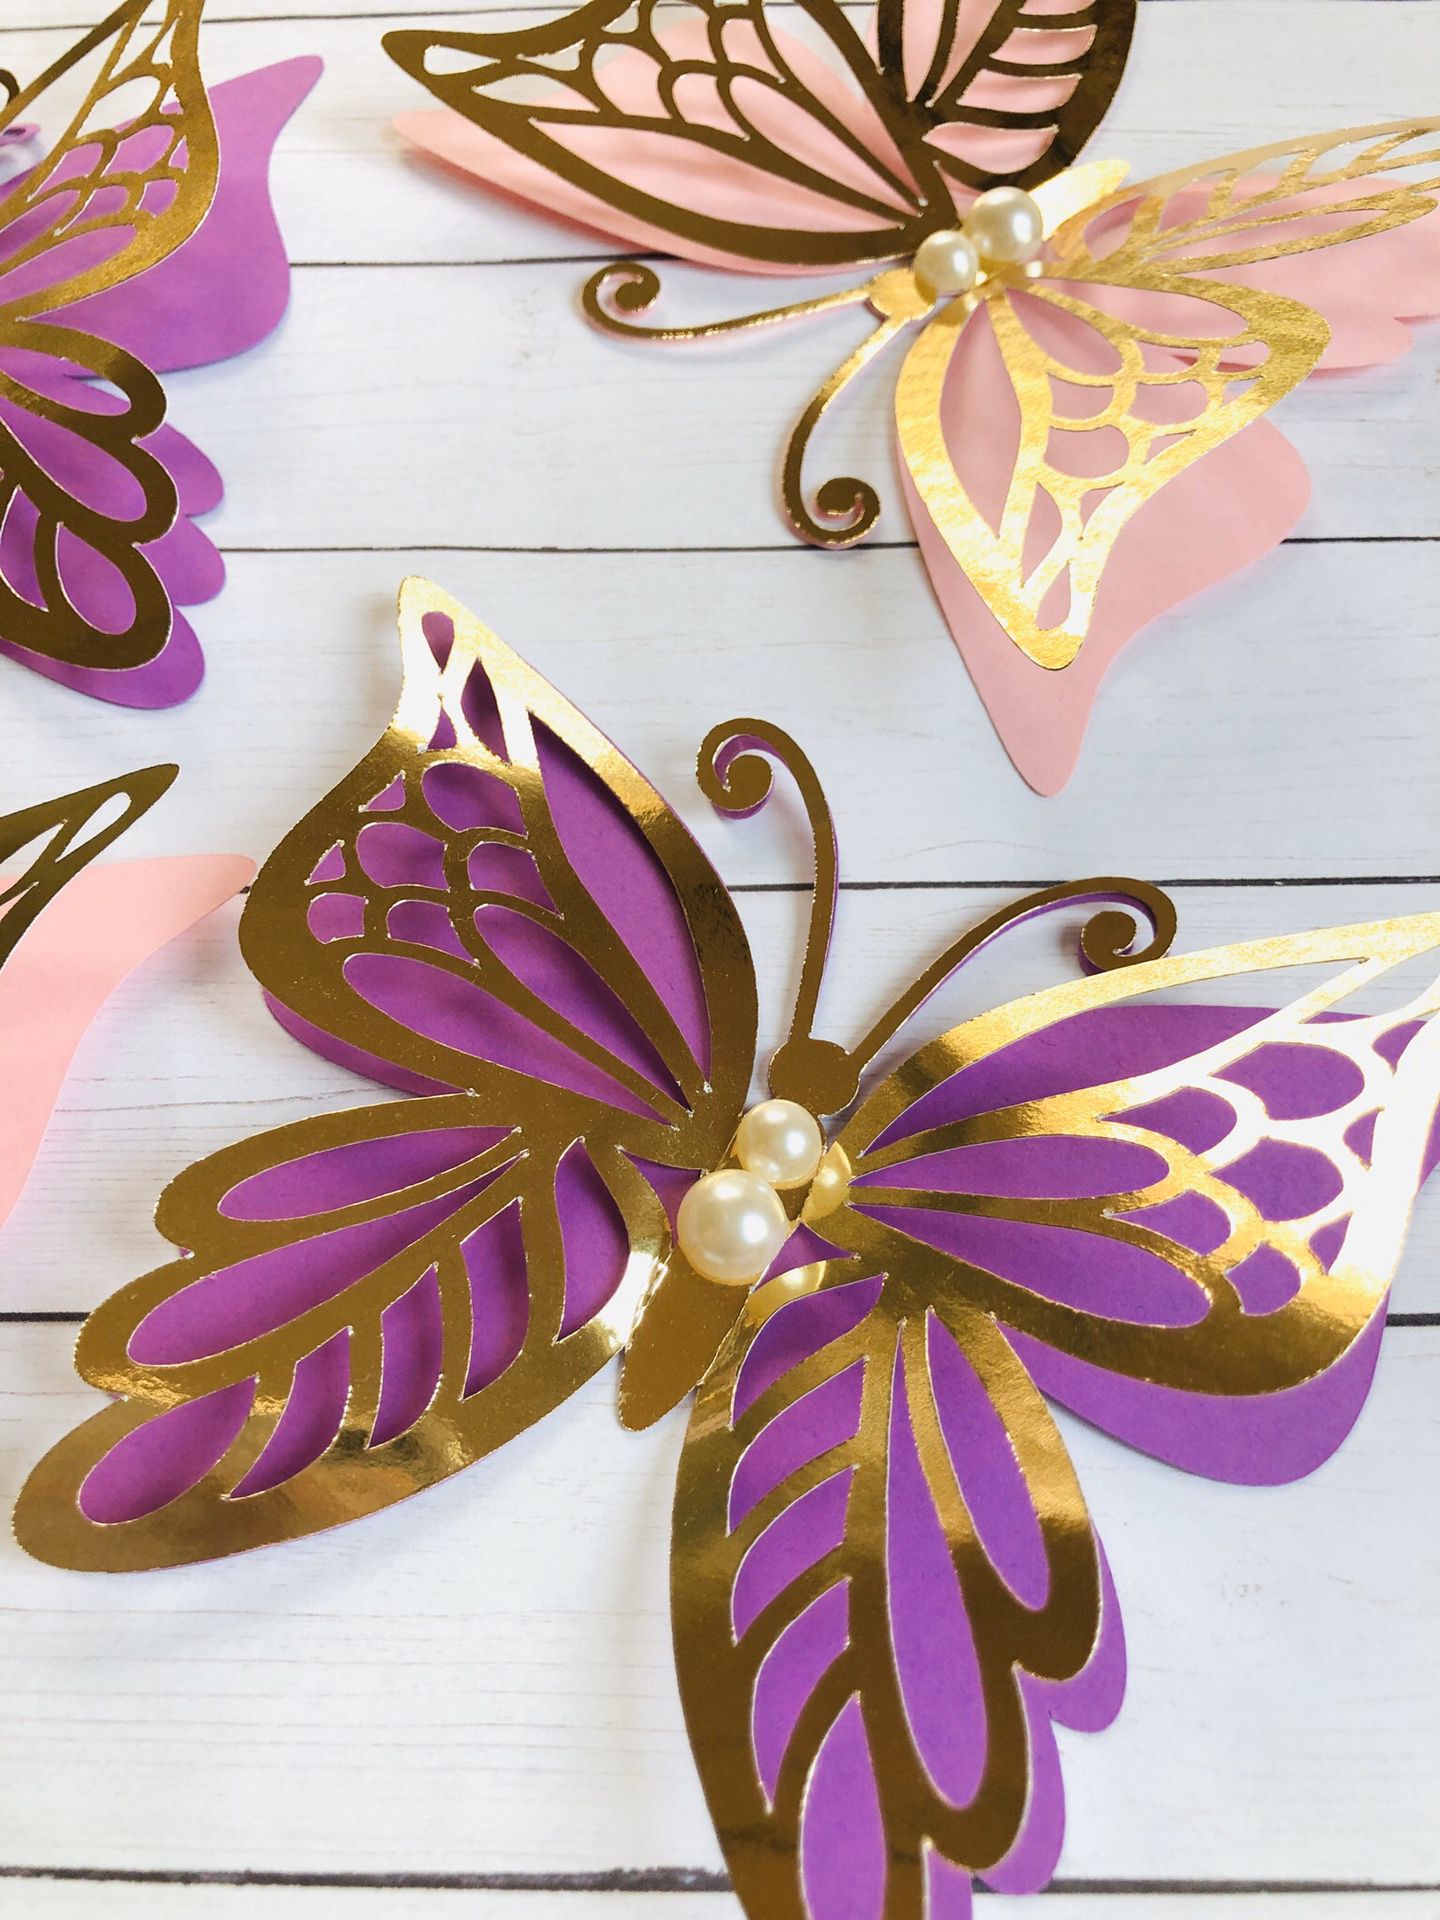 3D paper butterflies. 6pc set